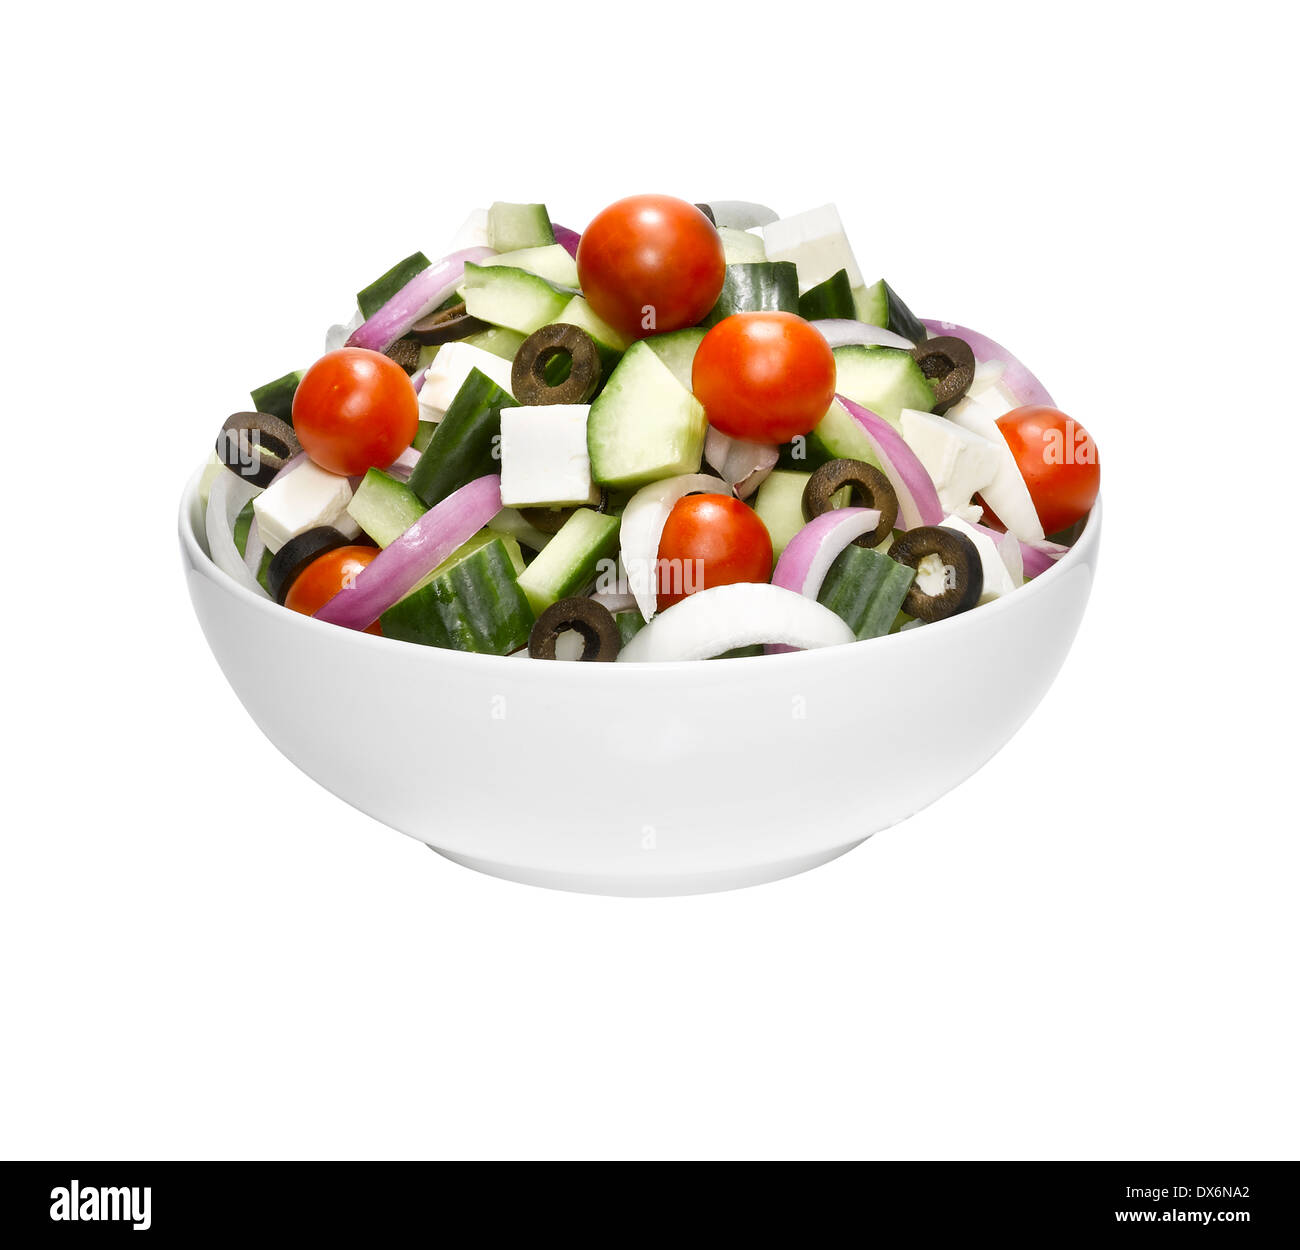 Un plato de ensalada griega. Foto de stock